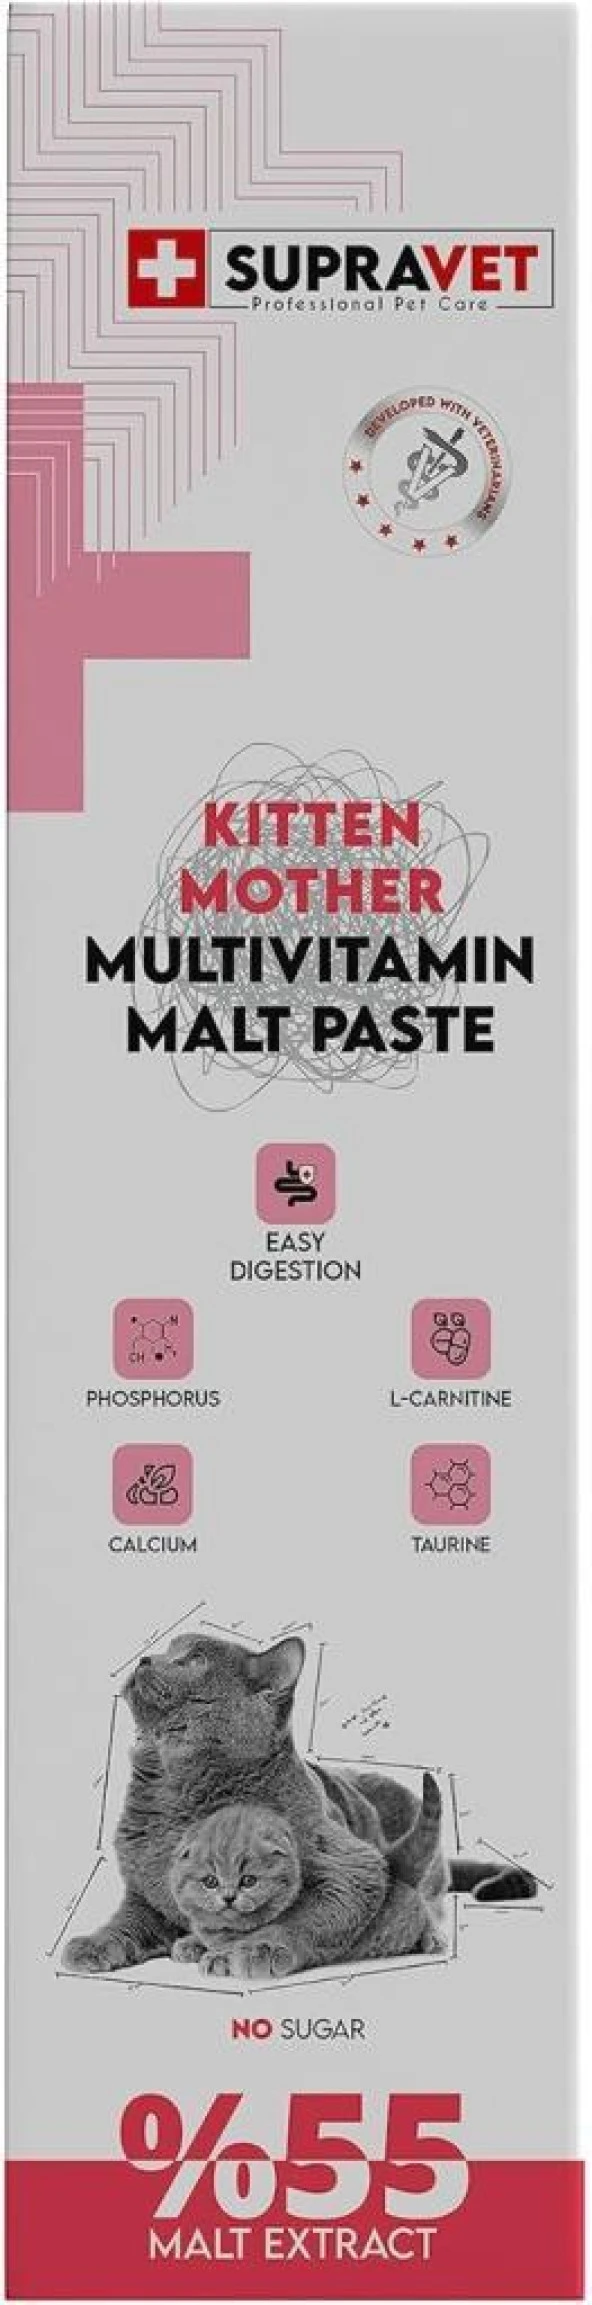 Supravet Kitten Mother Multi Vitamin Malt Paste 100 Gr.